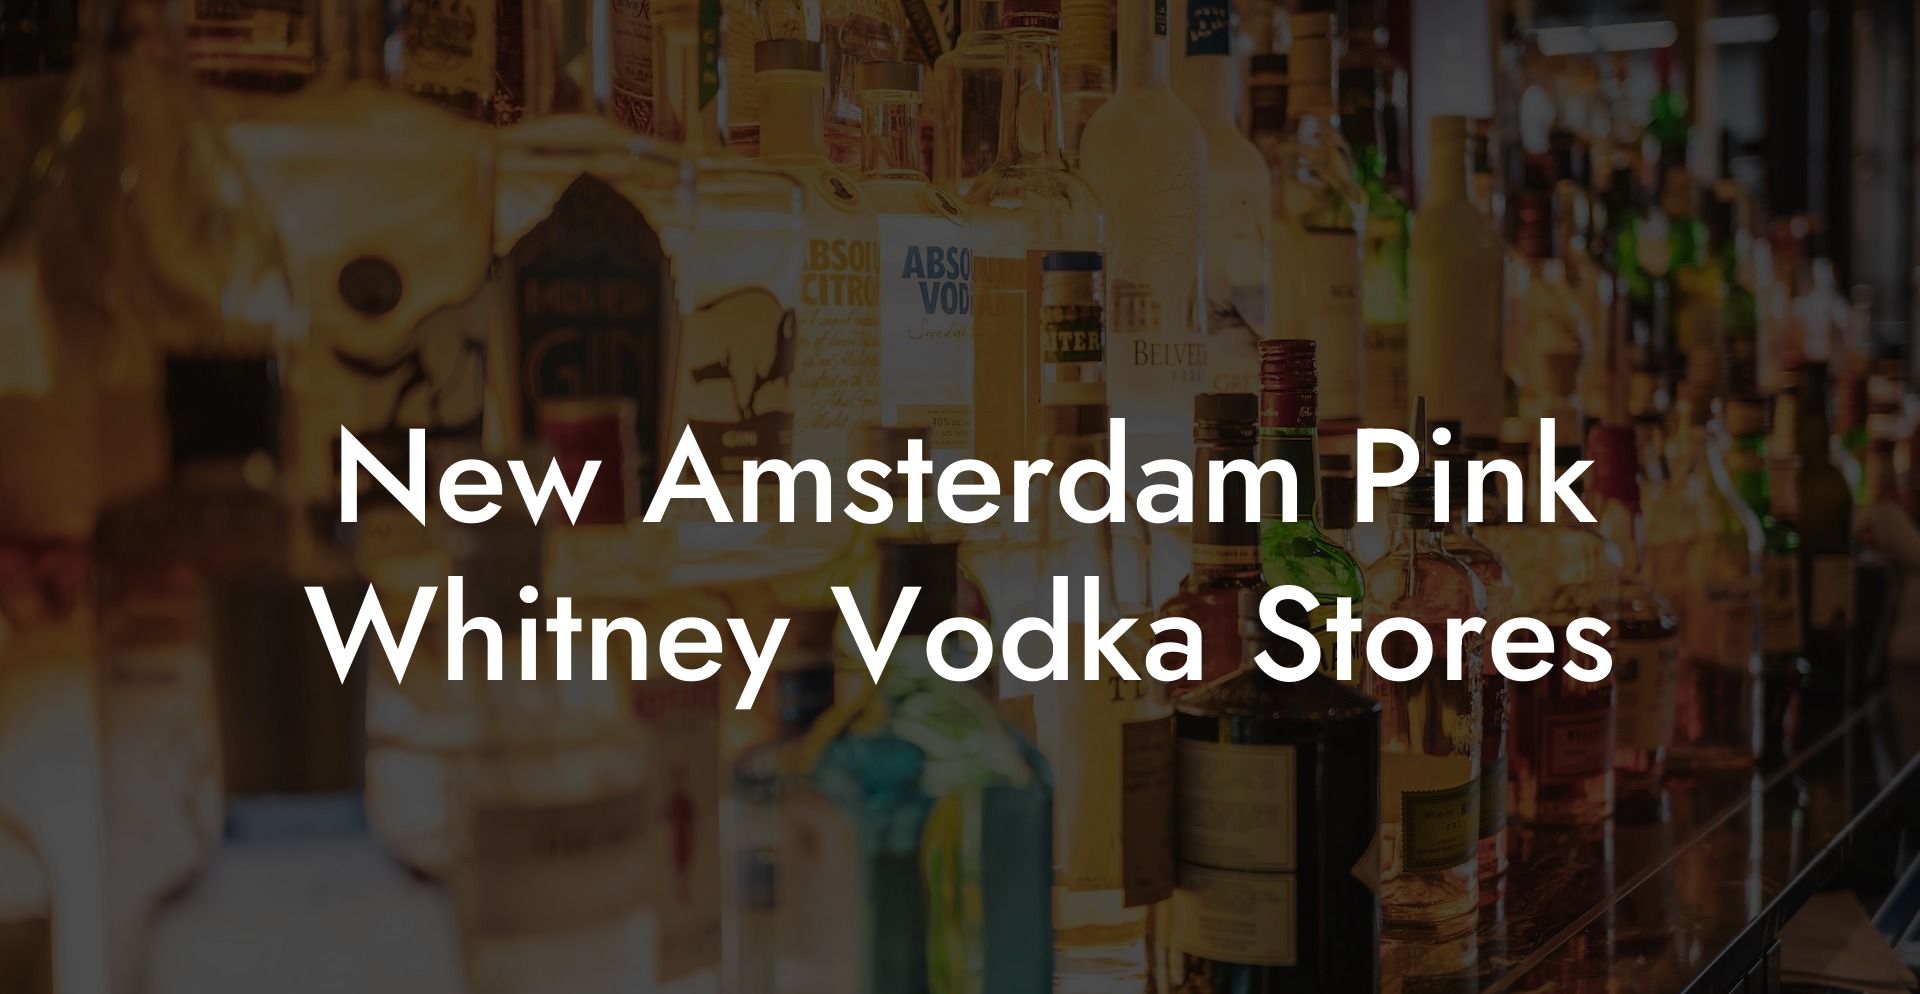 New Amsterdam Pink Whitney Vodka Stores